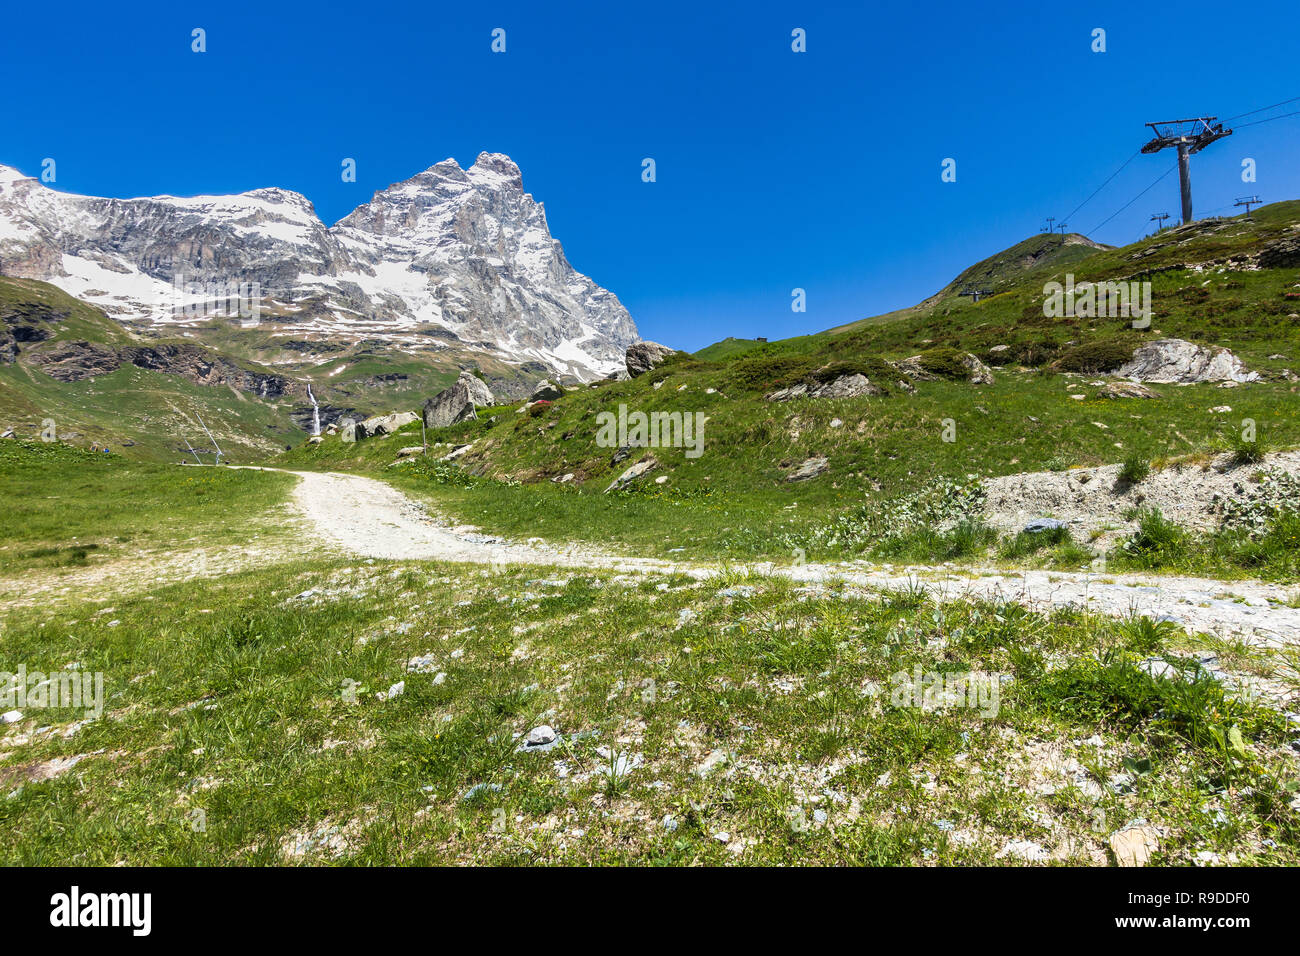 Paesaggio estivo con il Cervino (Cervino) visto da un sentiero vicino a Breuil-Cervinia, Valle d'Aosta, Italia settentrionale Foto Stock